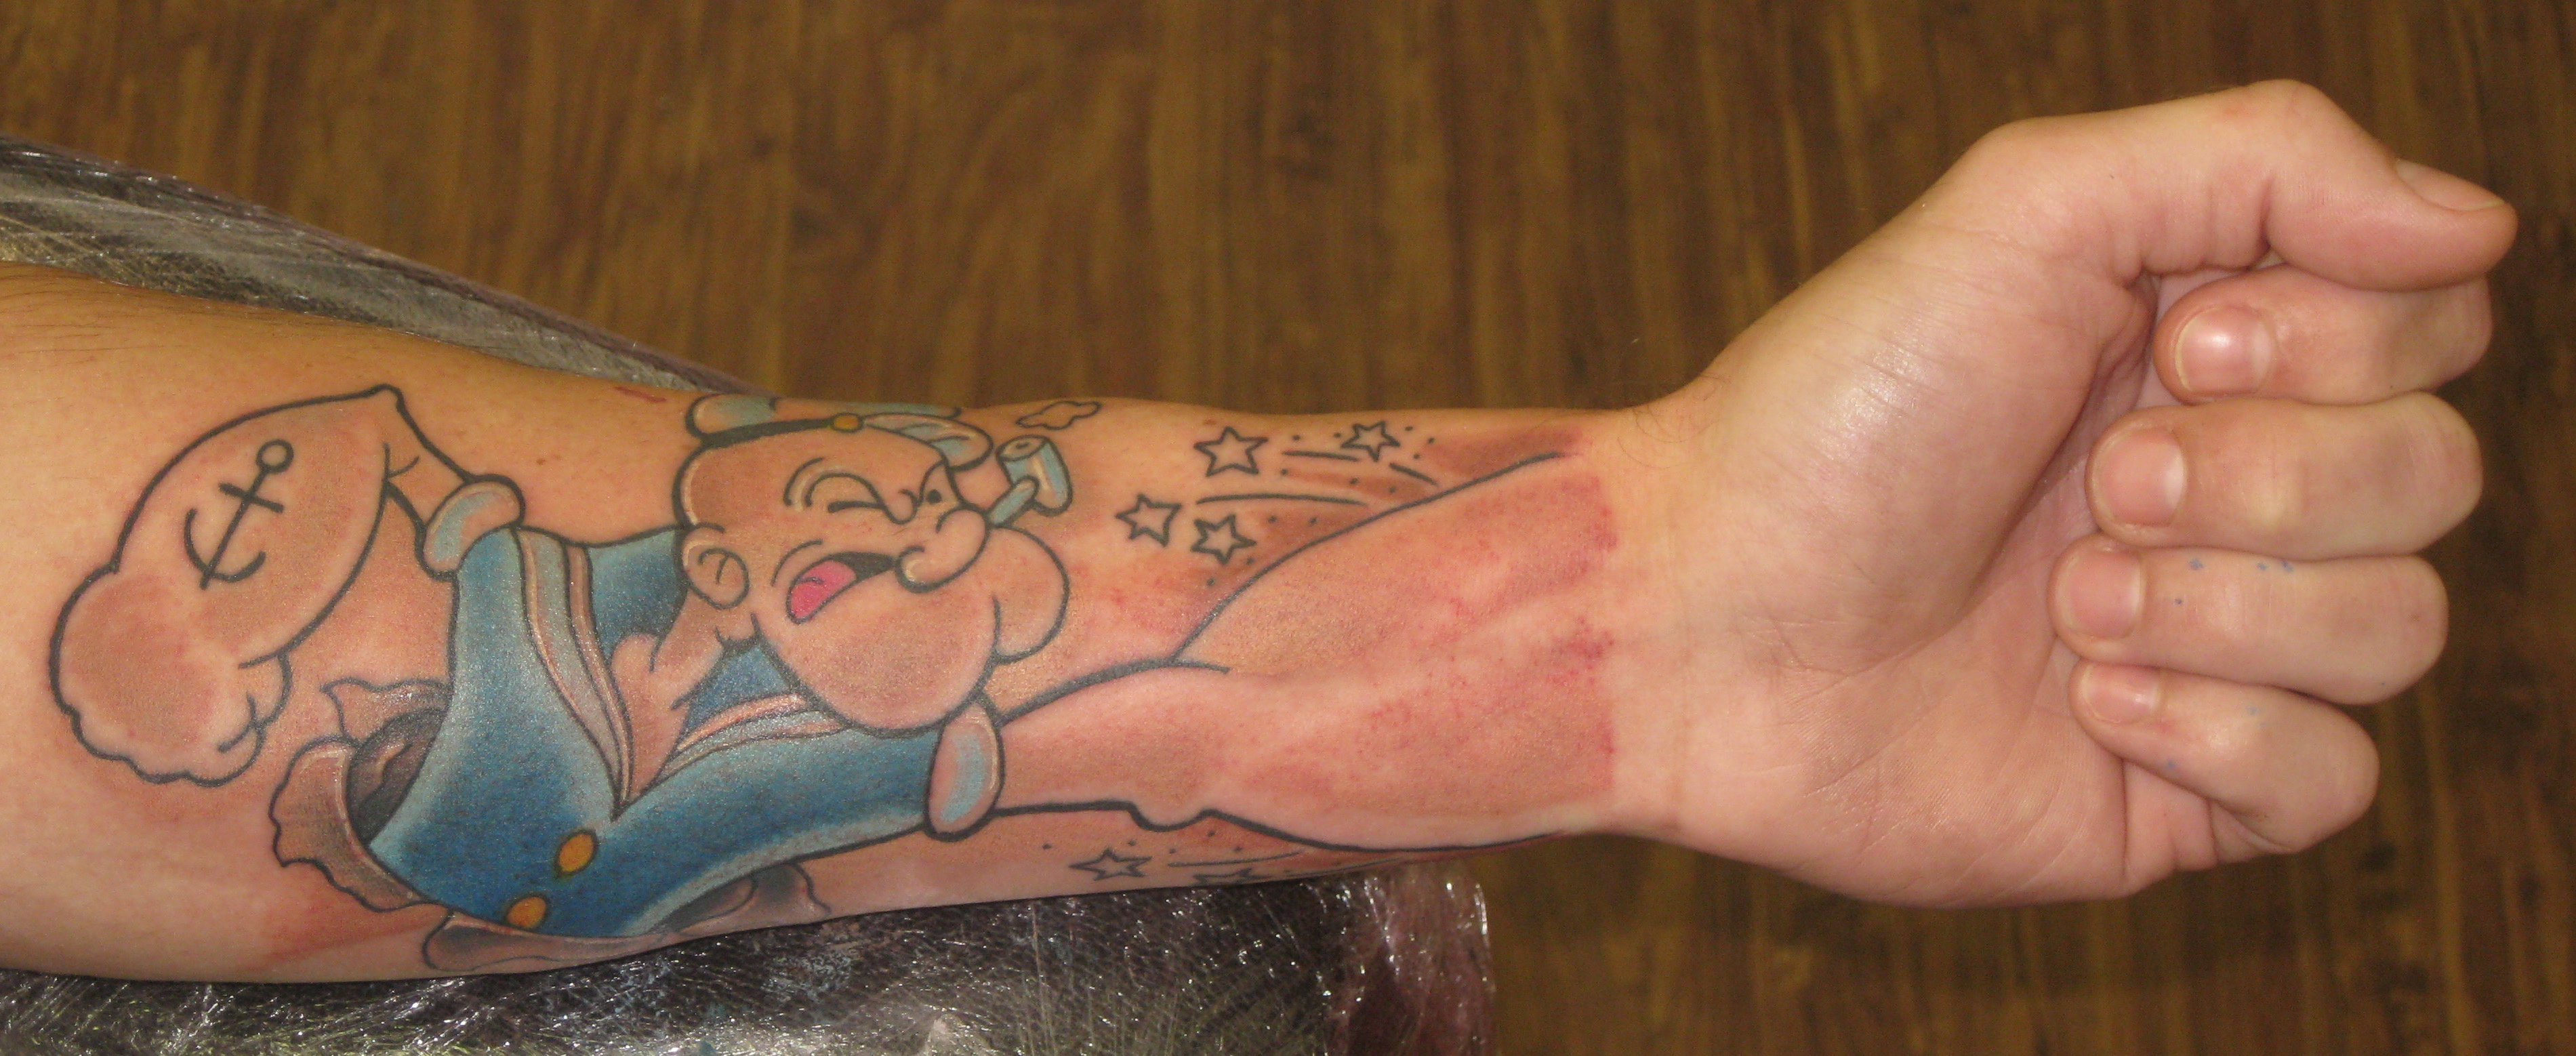 Popeye Arm Fist Tattoo Arm Tattoo Sites.